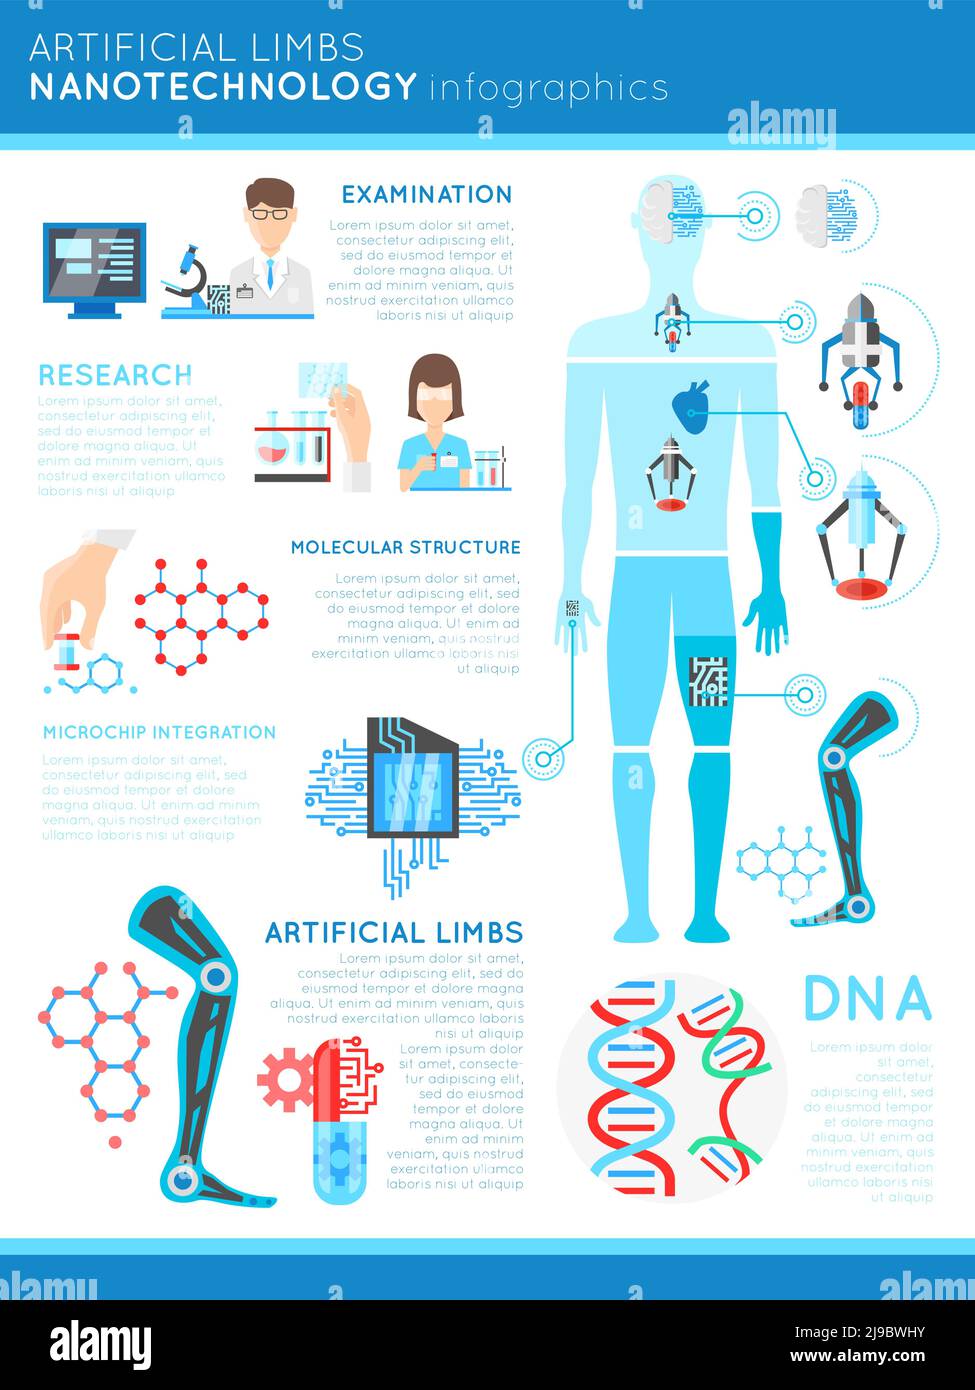 Künstliche Gliedmaßen Nanotechnologie Infografiken mit menschlichen Körper wissenschaftliche Forschung dna Und Mikrochip auf weißem Hintergrund Vektorgrafik Stock Vektor